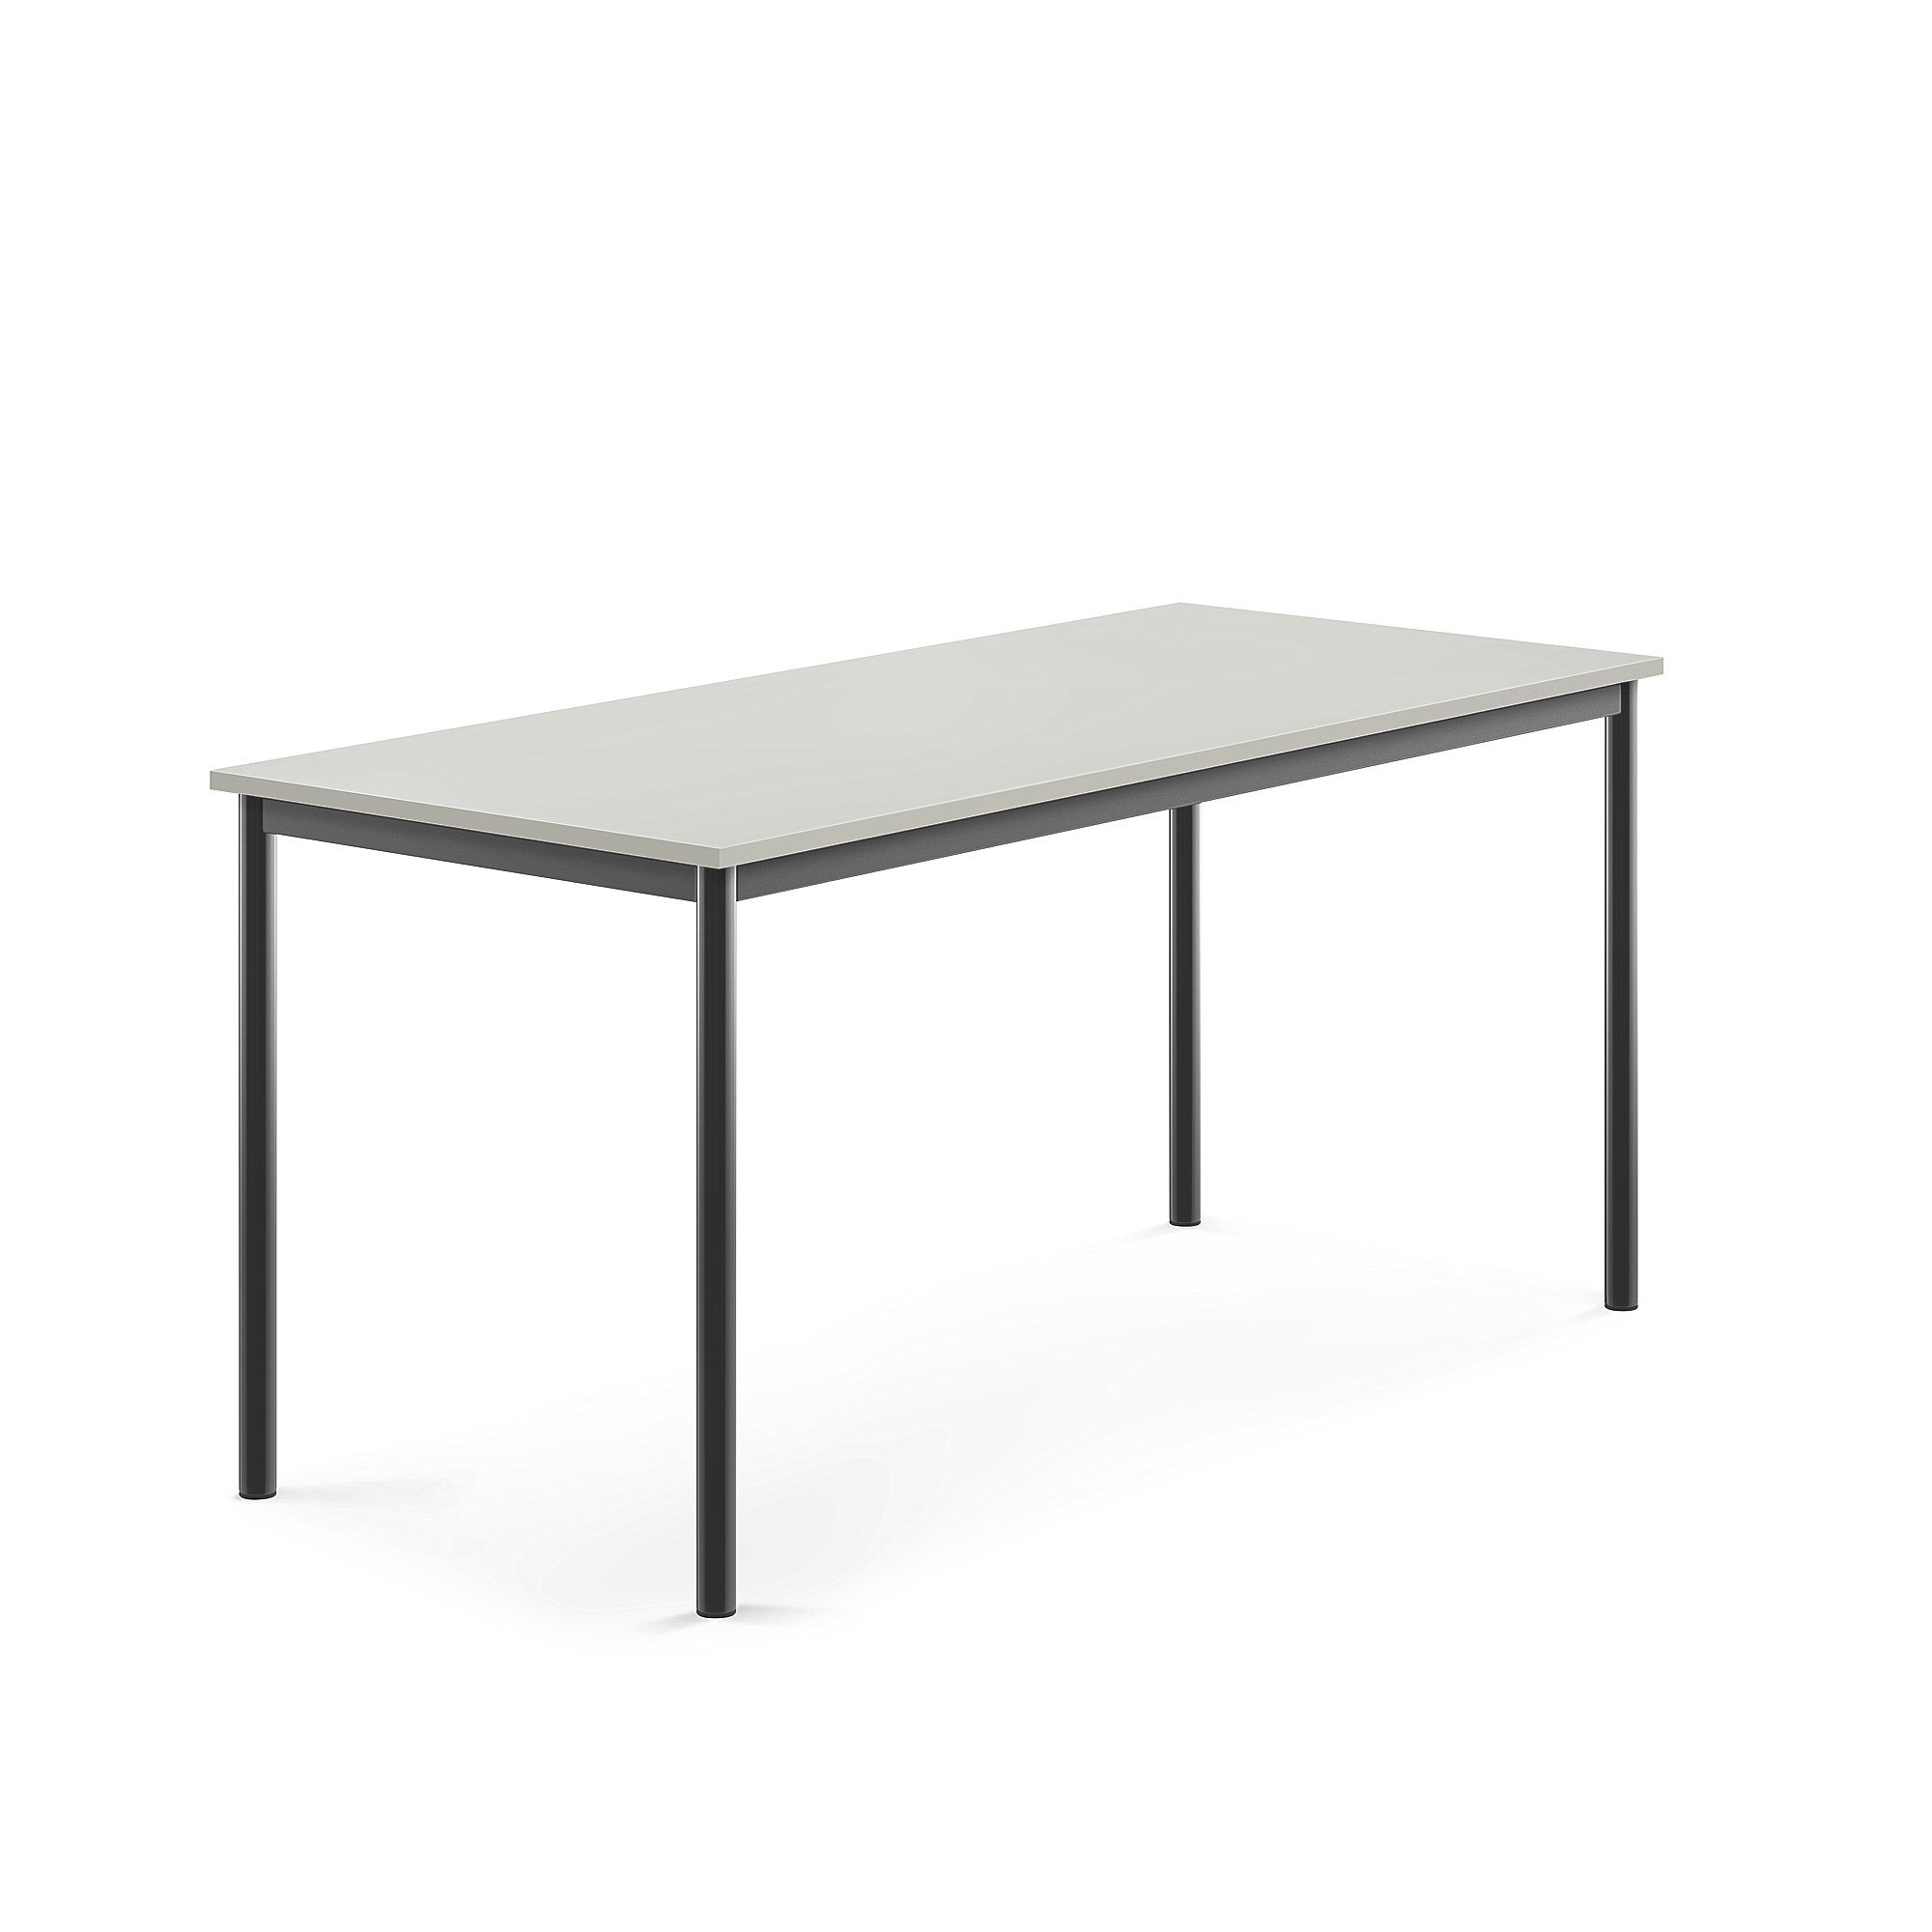 Stůl SONITUS, 1600x700x720 mm, antracitově šedé nohy, HPL deska tlumící hluk, šedá